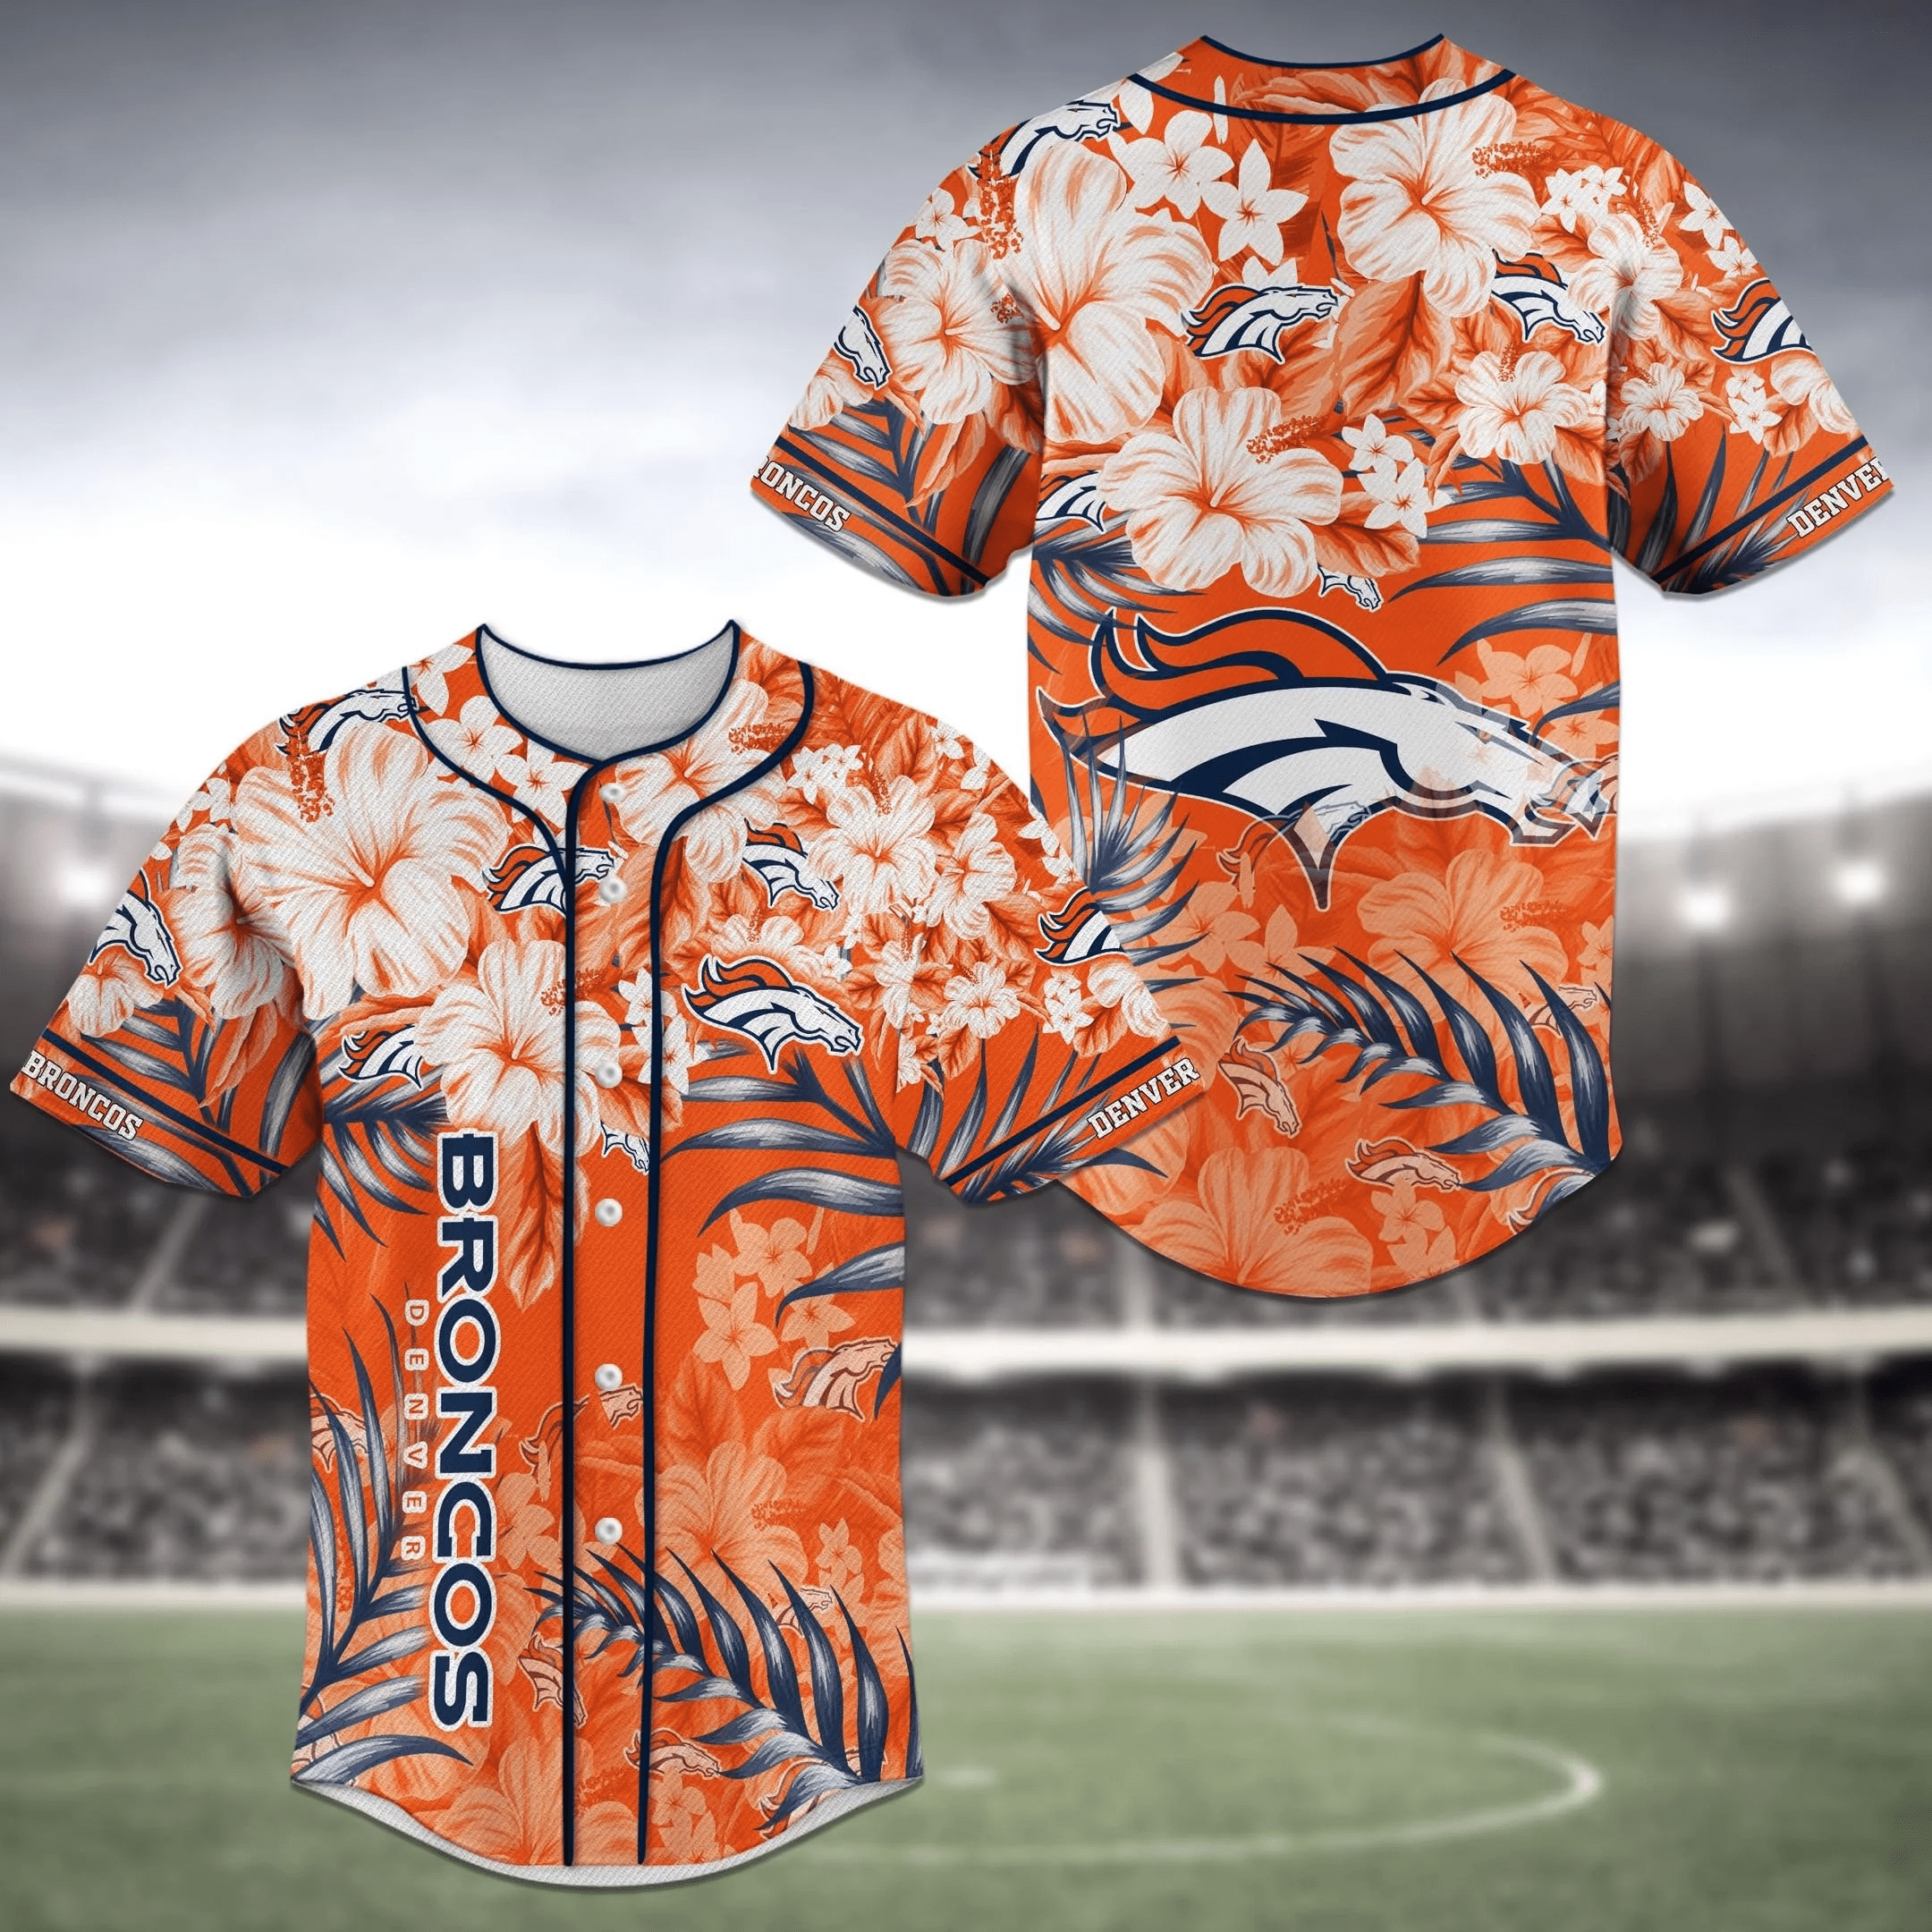 Denver Broncos NFL Baseball Jersey Shirt with Flower Design